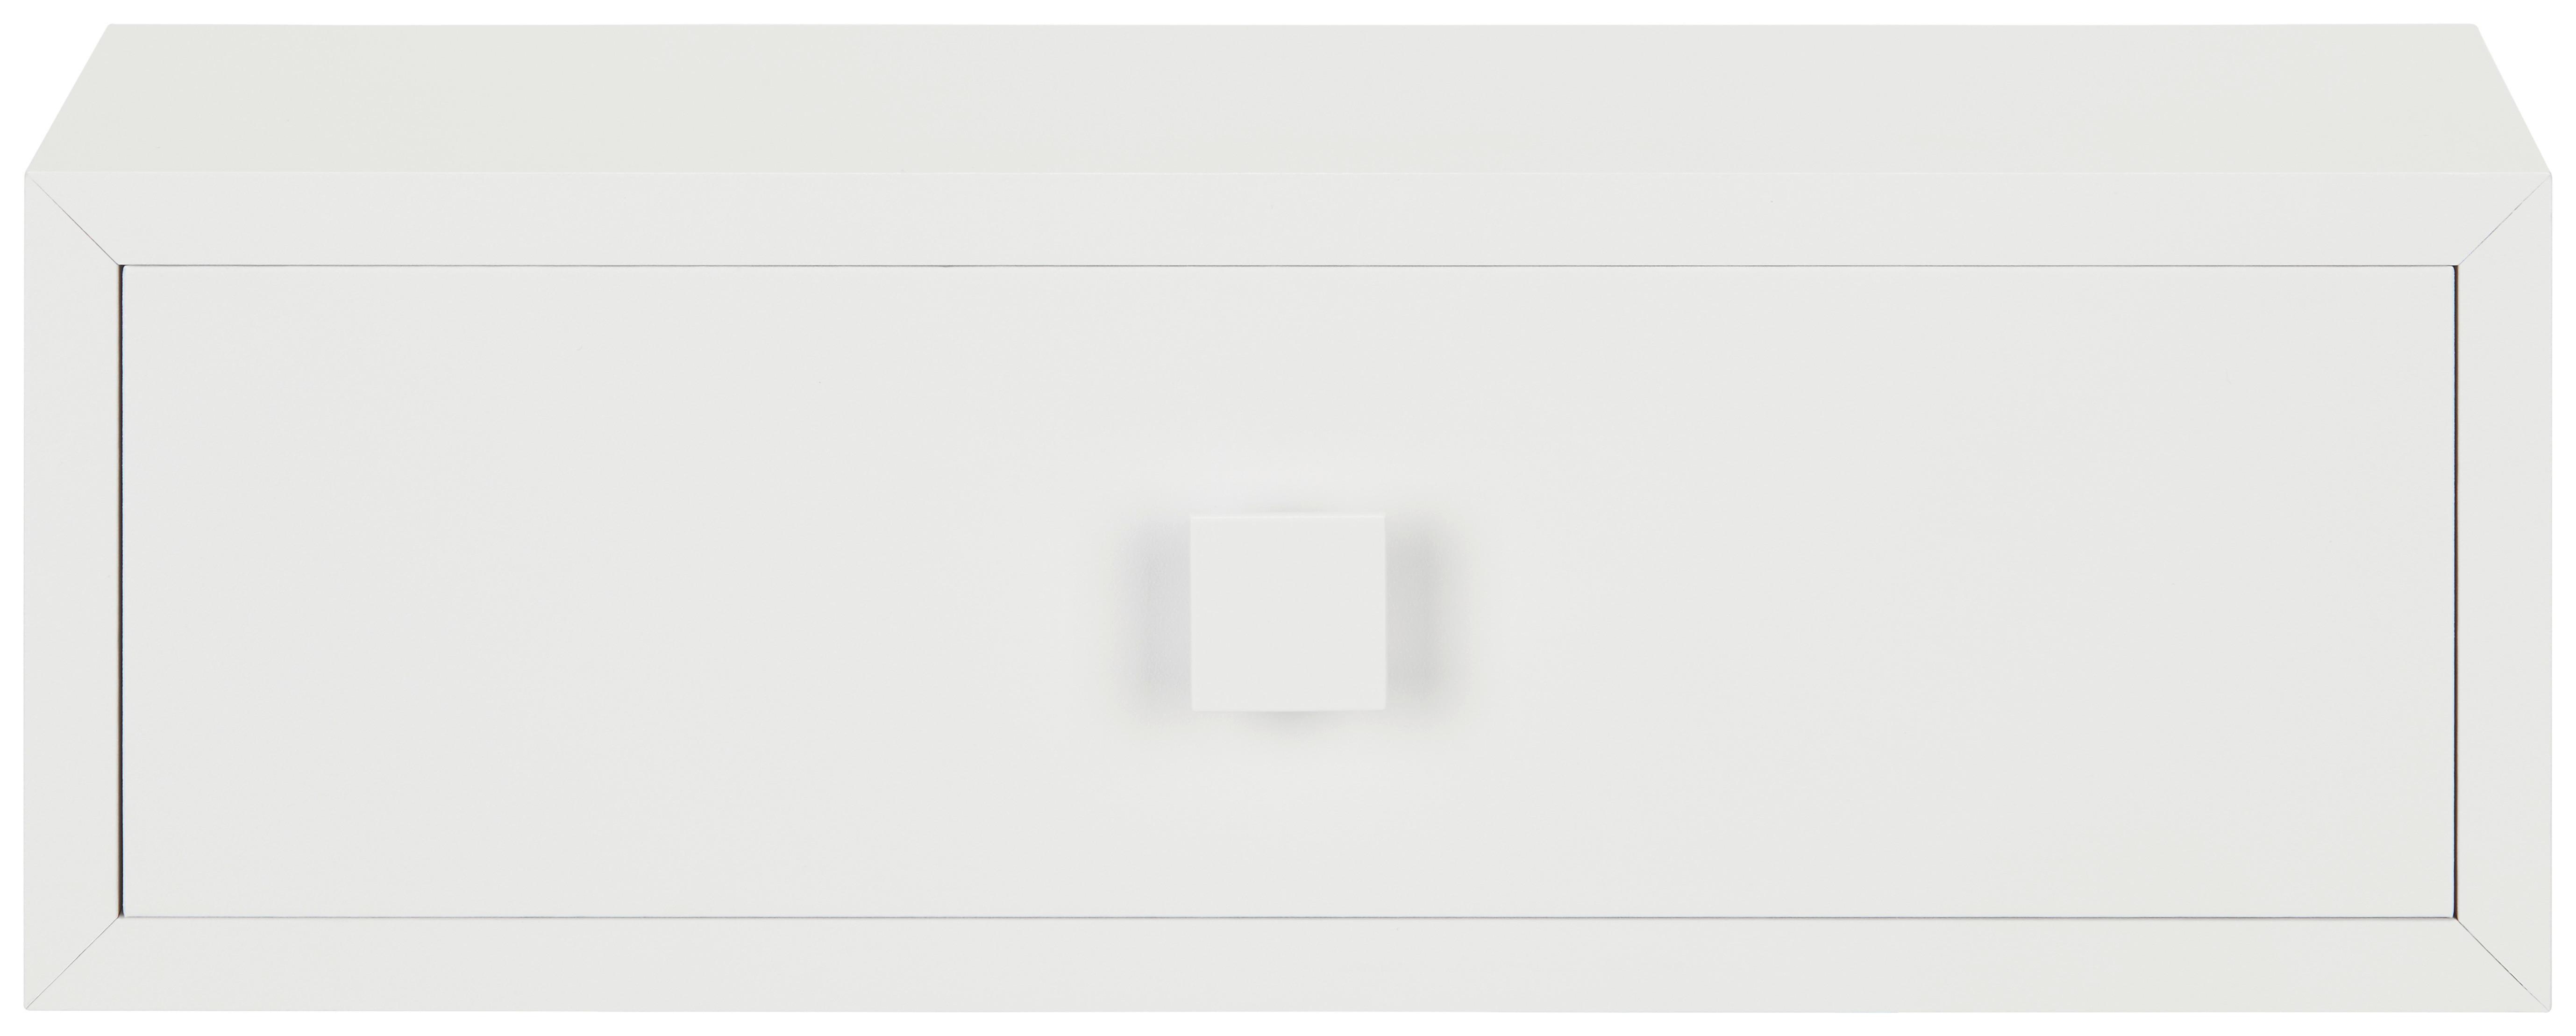 Schreibtischaufsatz in Weiß - Weiß, Holzwerkstoff (38,5/13/19cm) - Modern Living